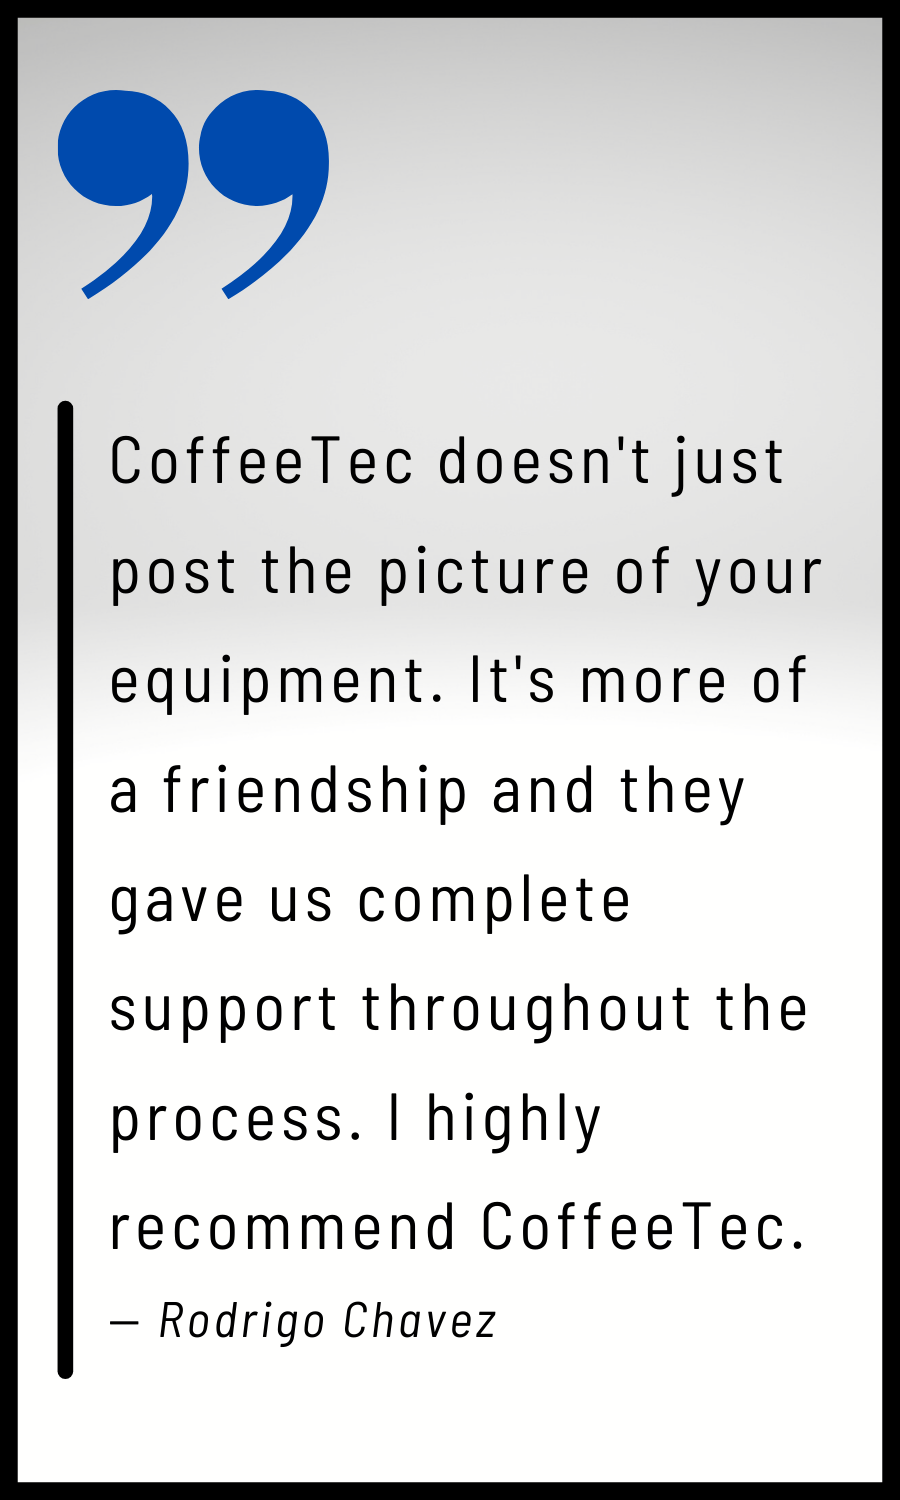 Rodrigo Chavez quote about CoffeeTec